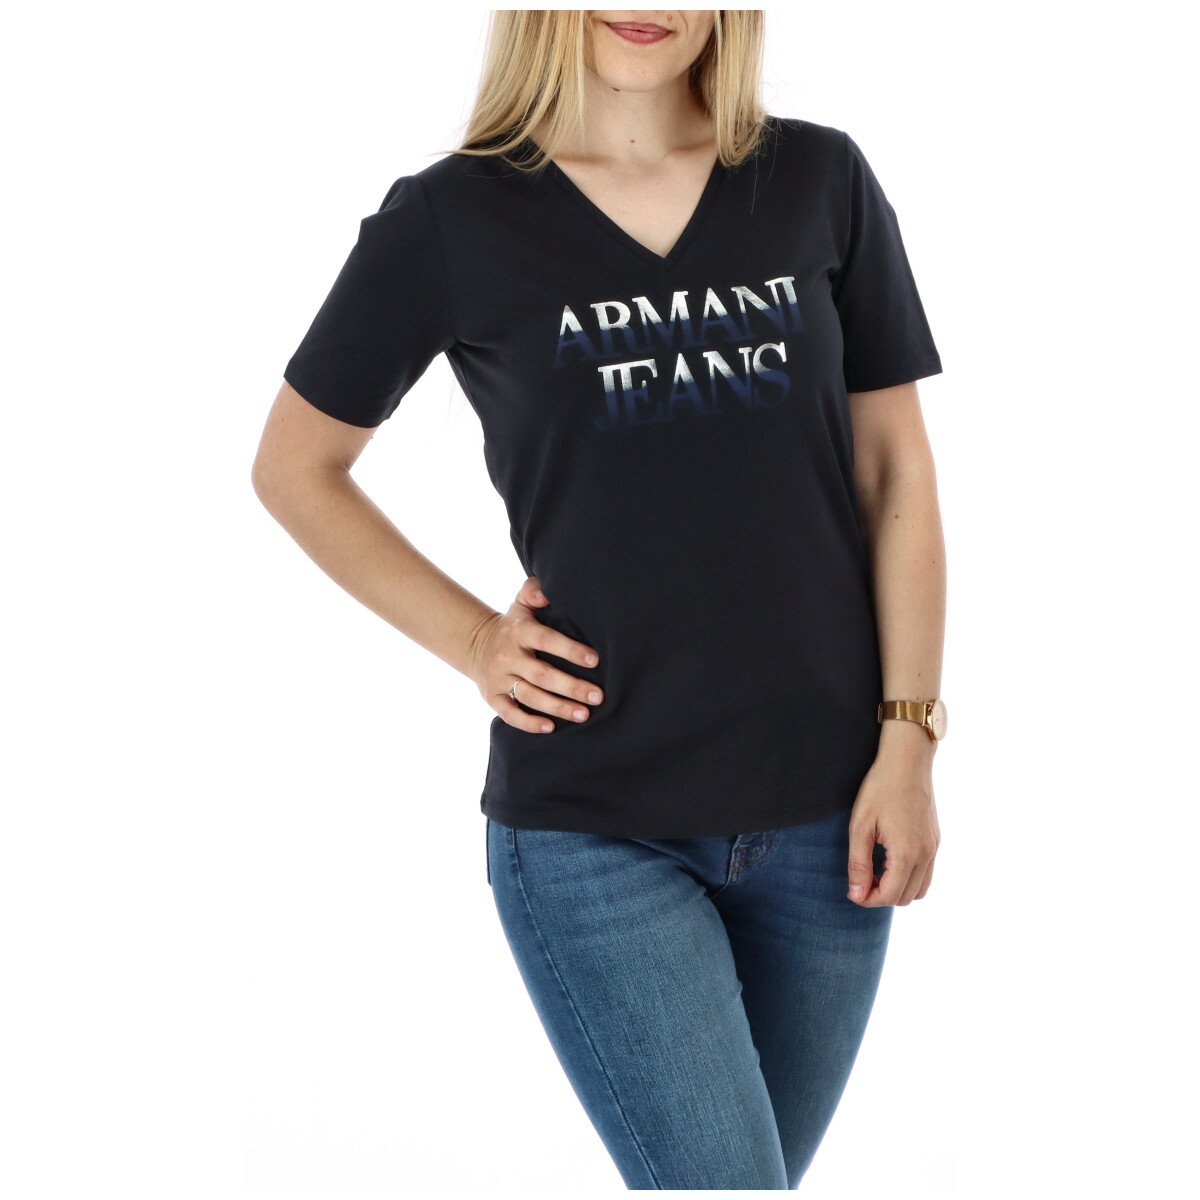 Armani Jeans Women's T-Shirt Various Colours 271608 - blue M